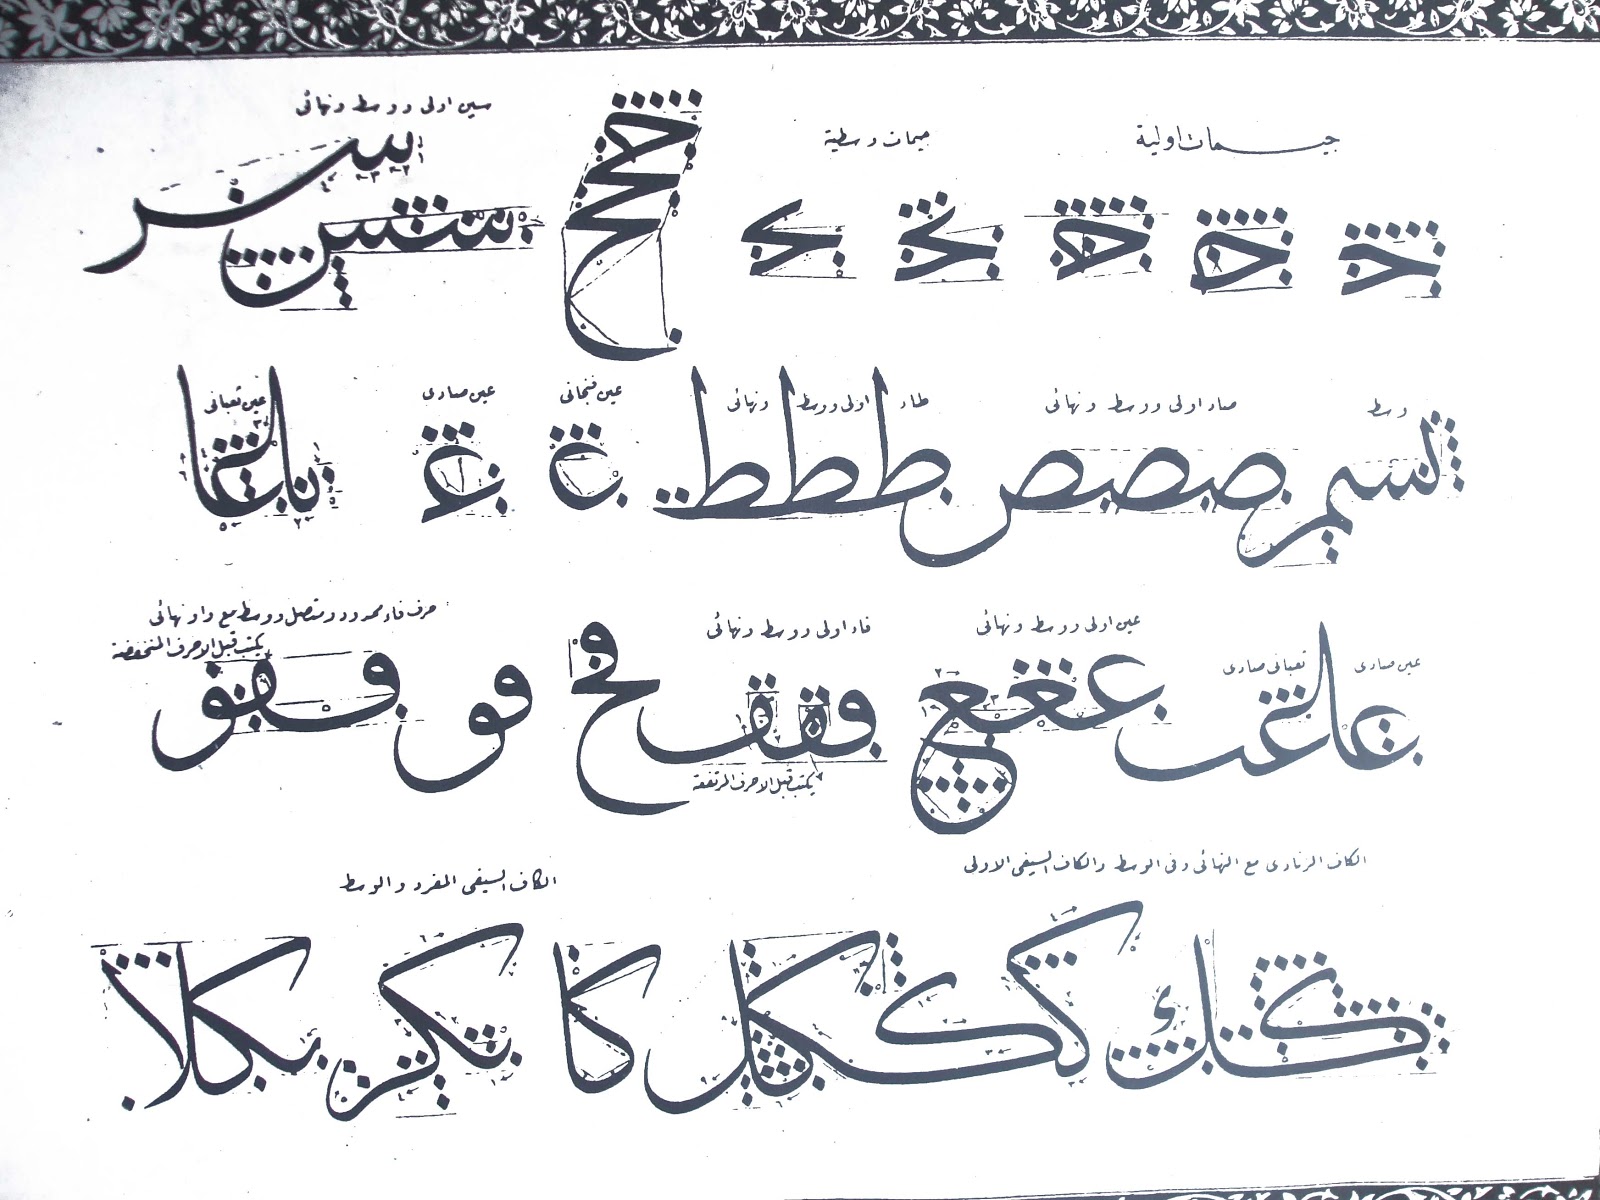 Al-Khadim Calligraphy: Others Khatati